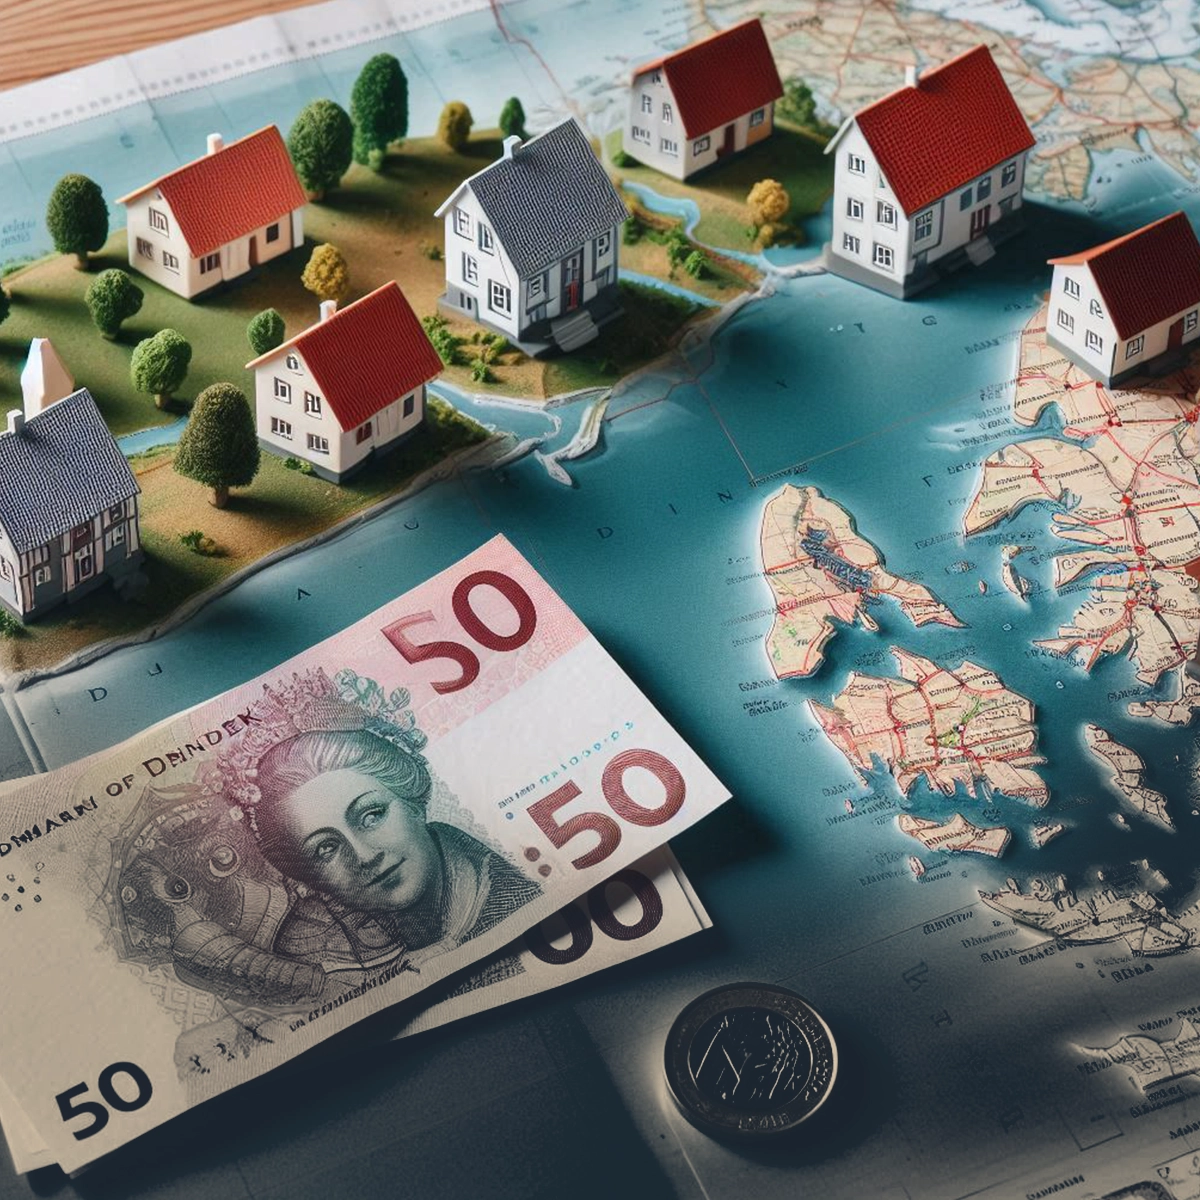 تفاوت قیمت خانه در دانمارک بر اساس منطقه شهری